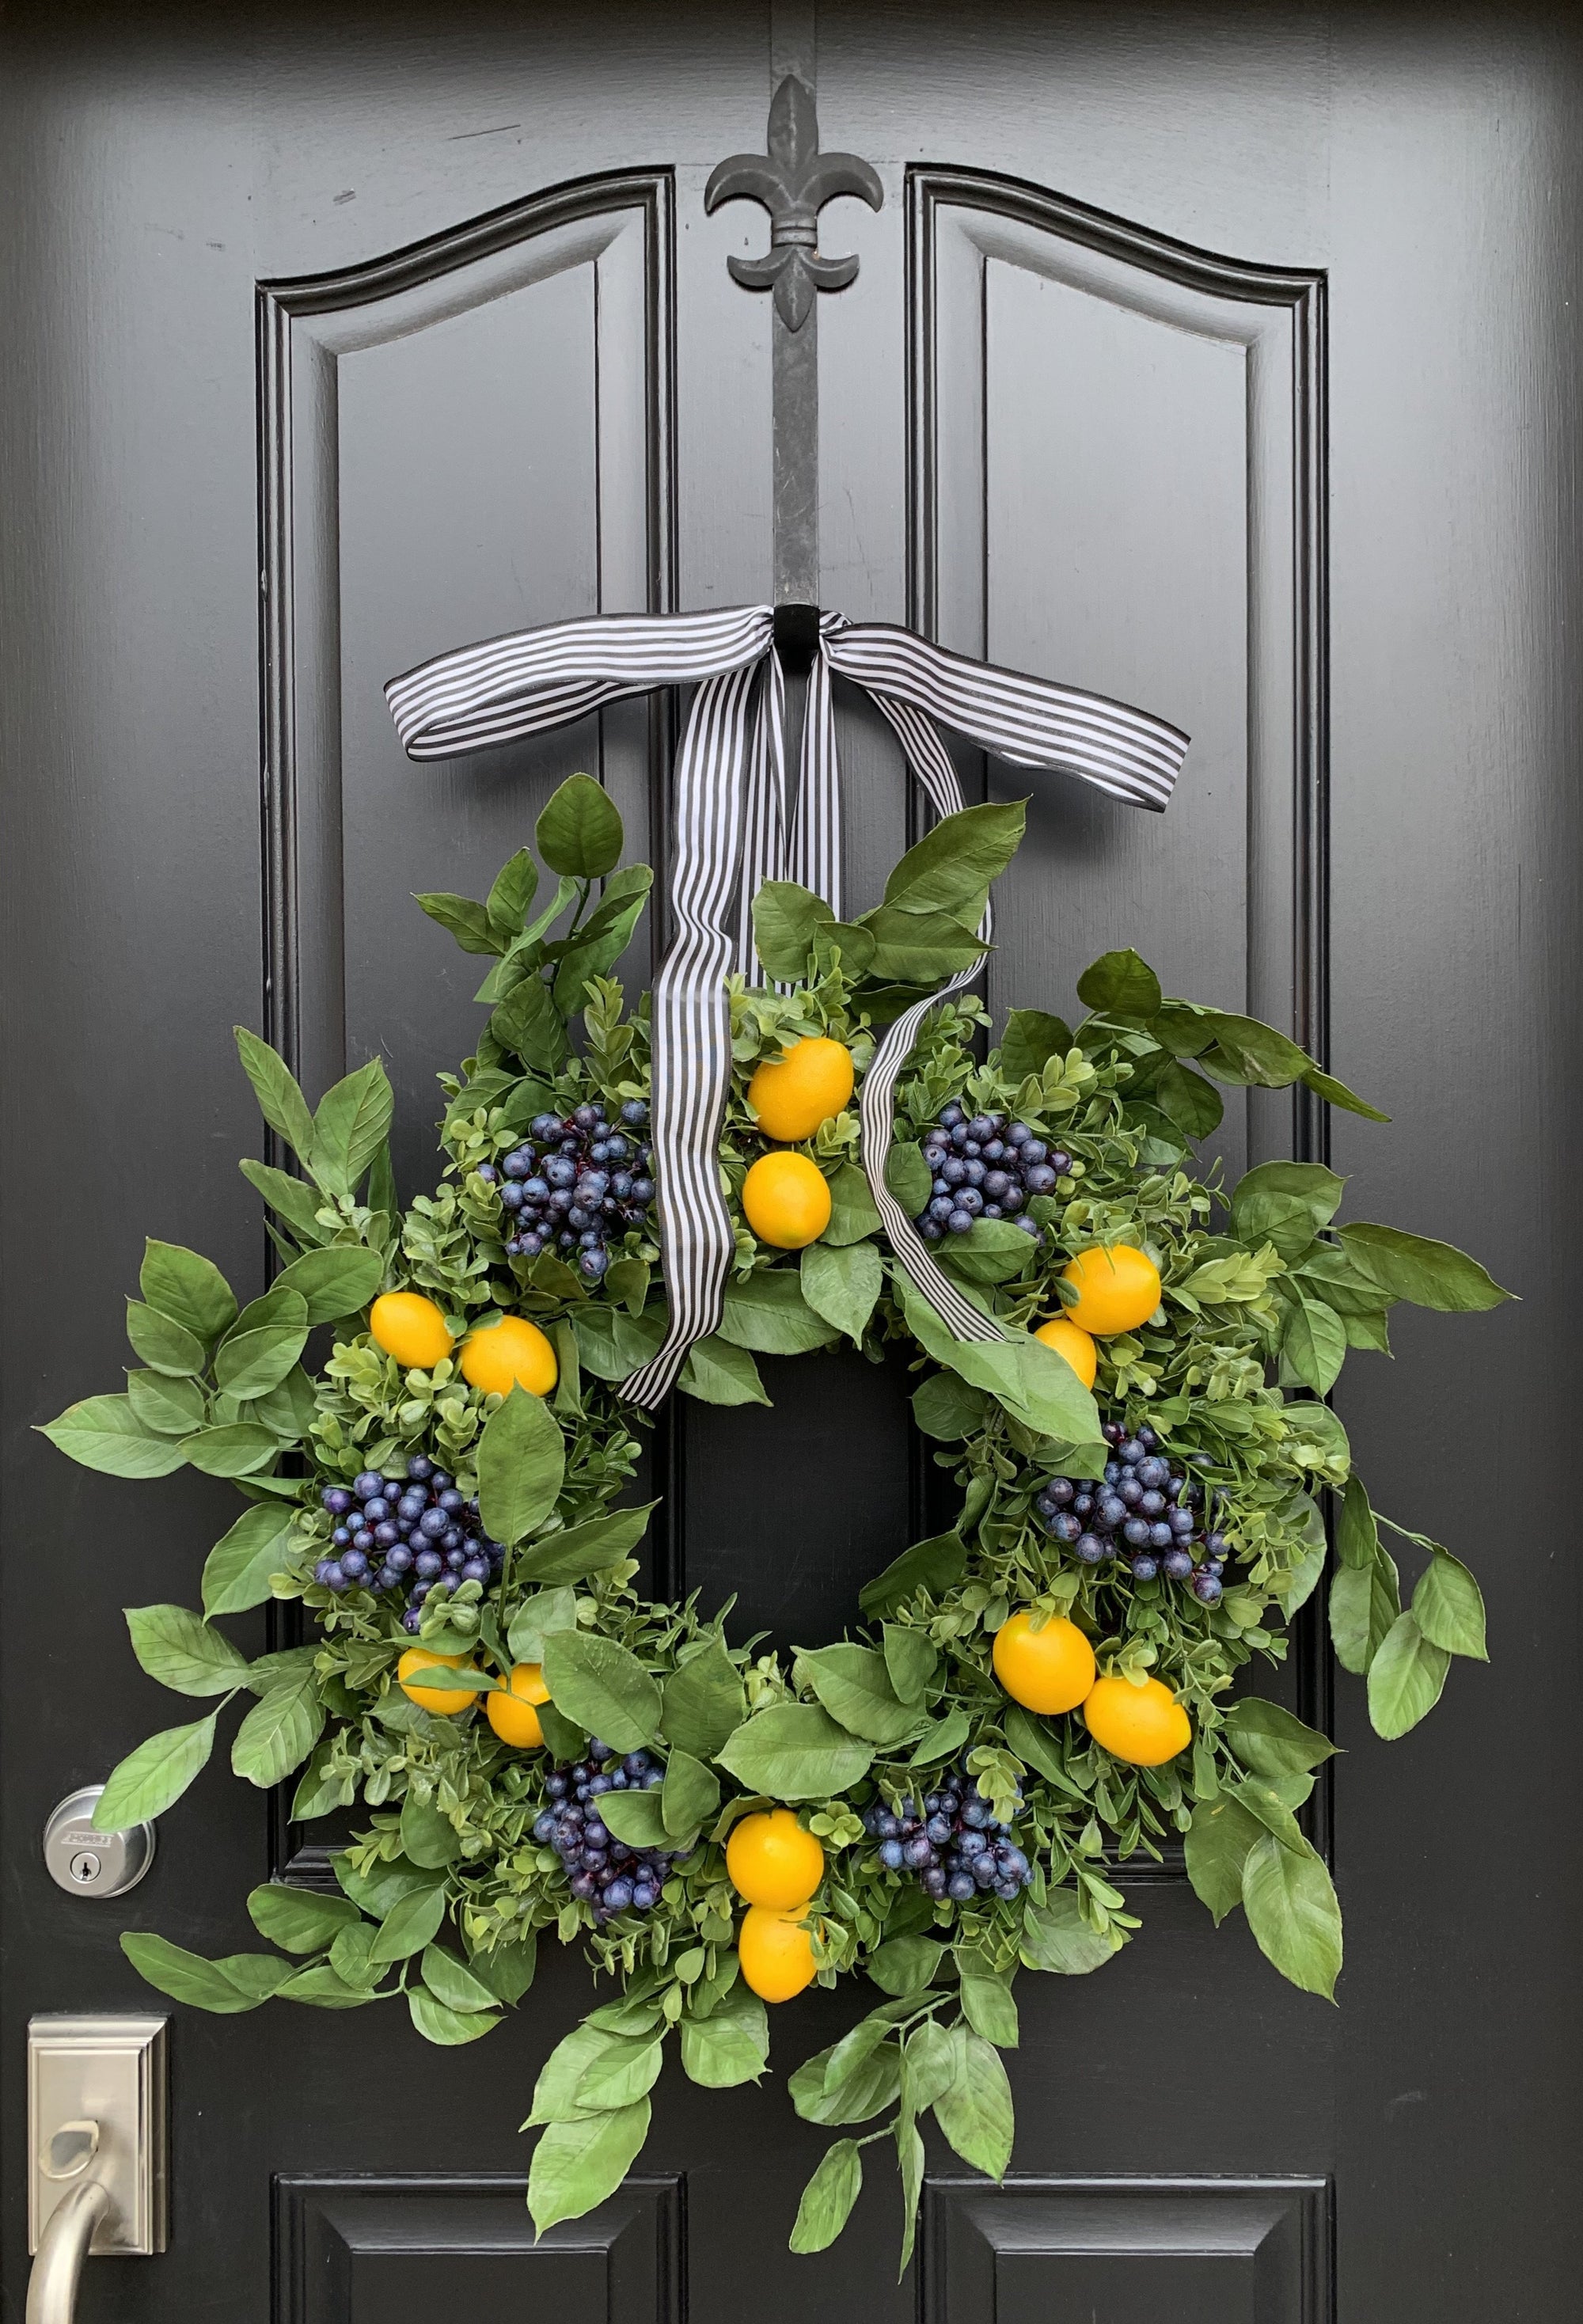 Lemon, Blueberry and Boxwood Wreath